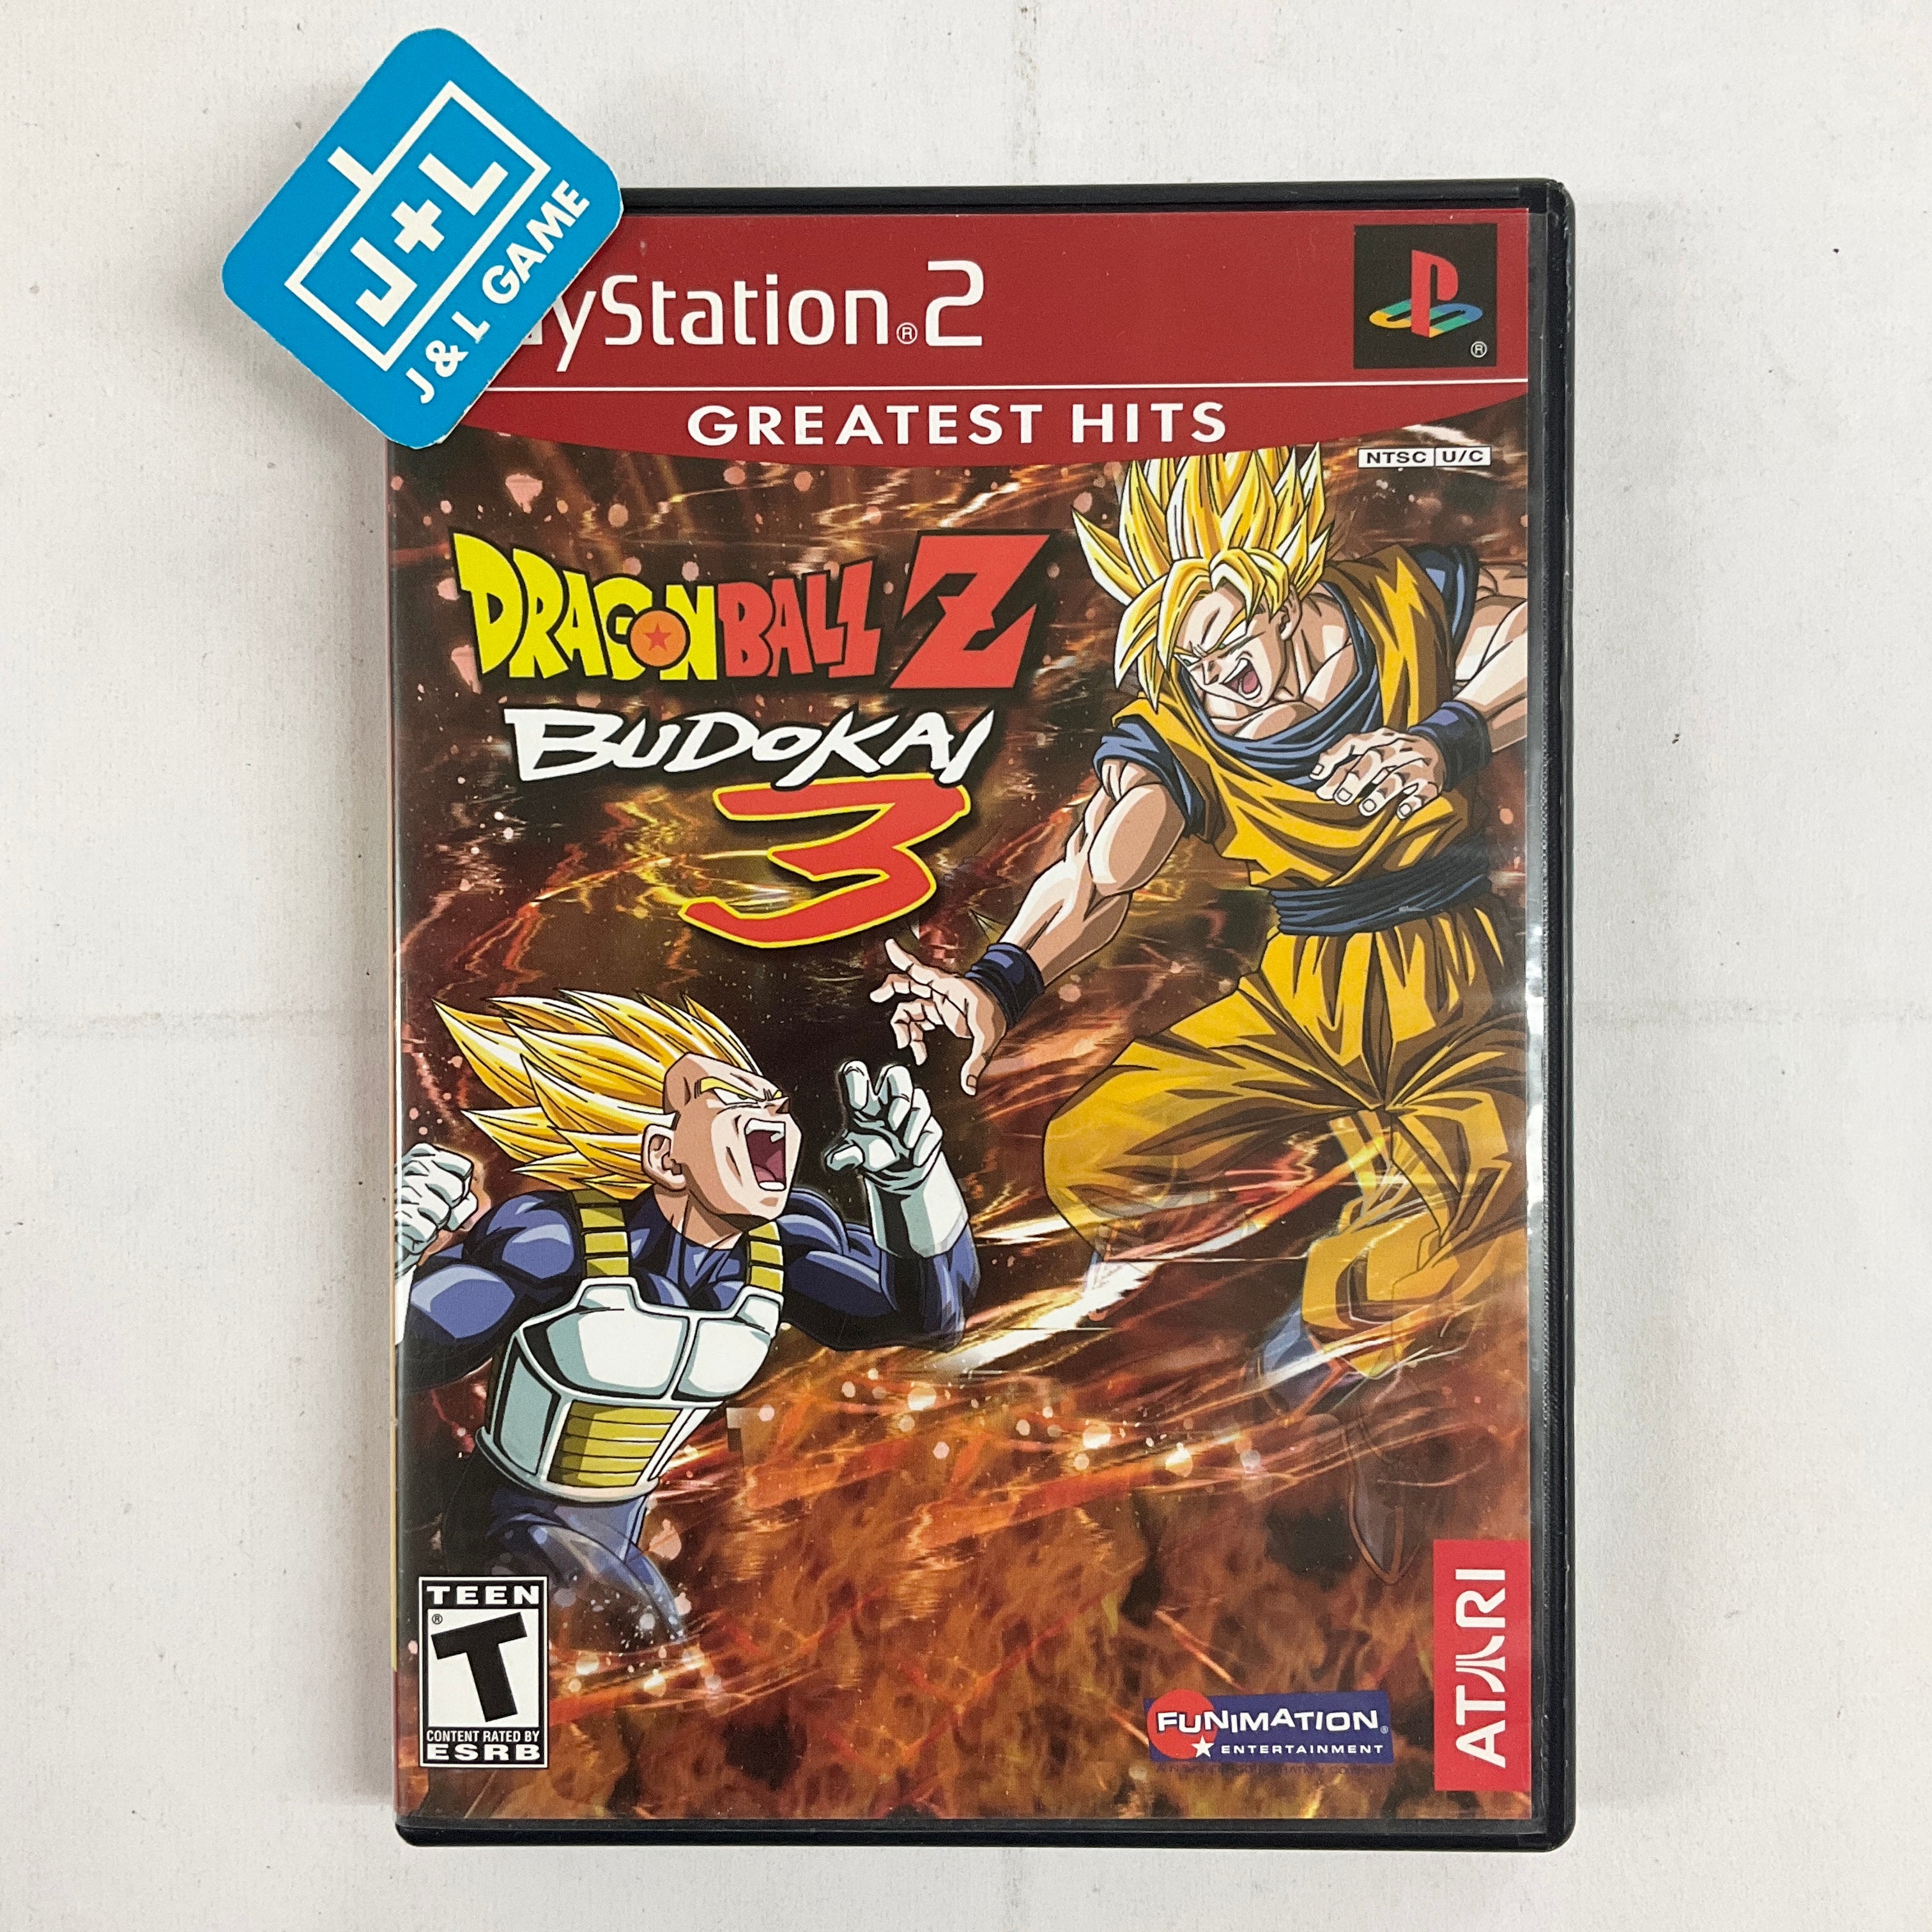 Dragon Ball Z: Budokai 3 (Greatest Hits) - (PS2) PlayStation 2 [Pre-Owned] Video Games Atari SA   